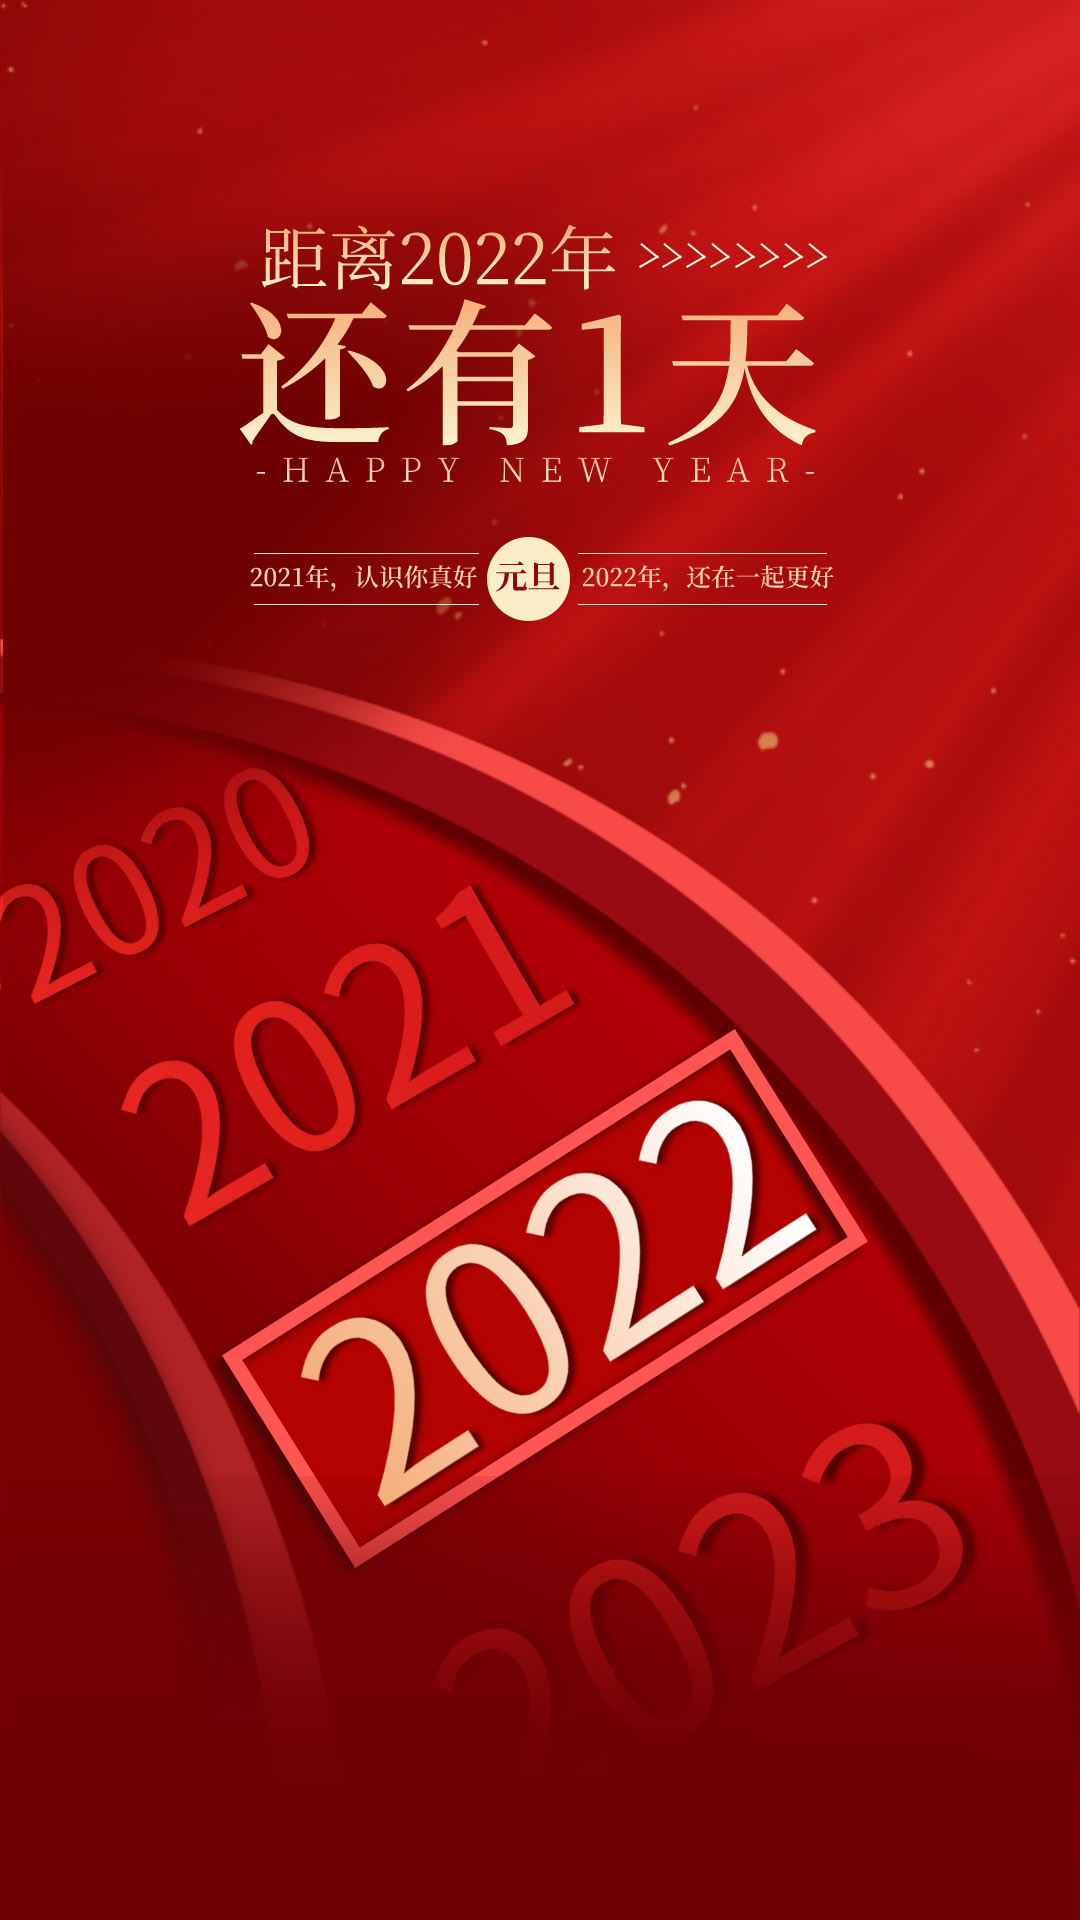 2022年新年海报设计和祝福语